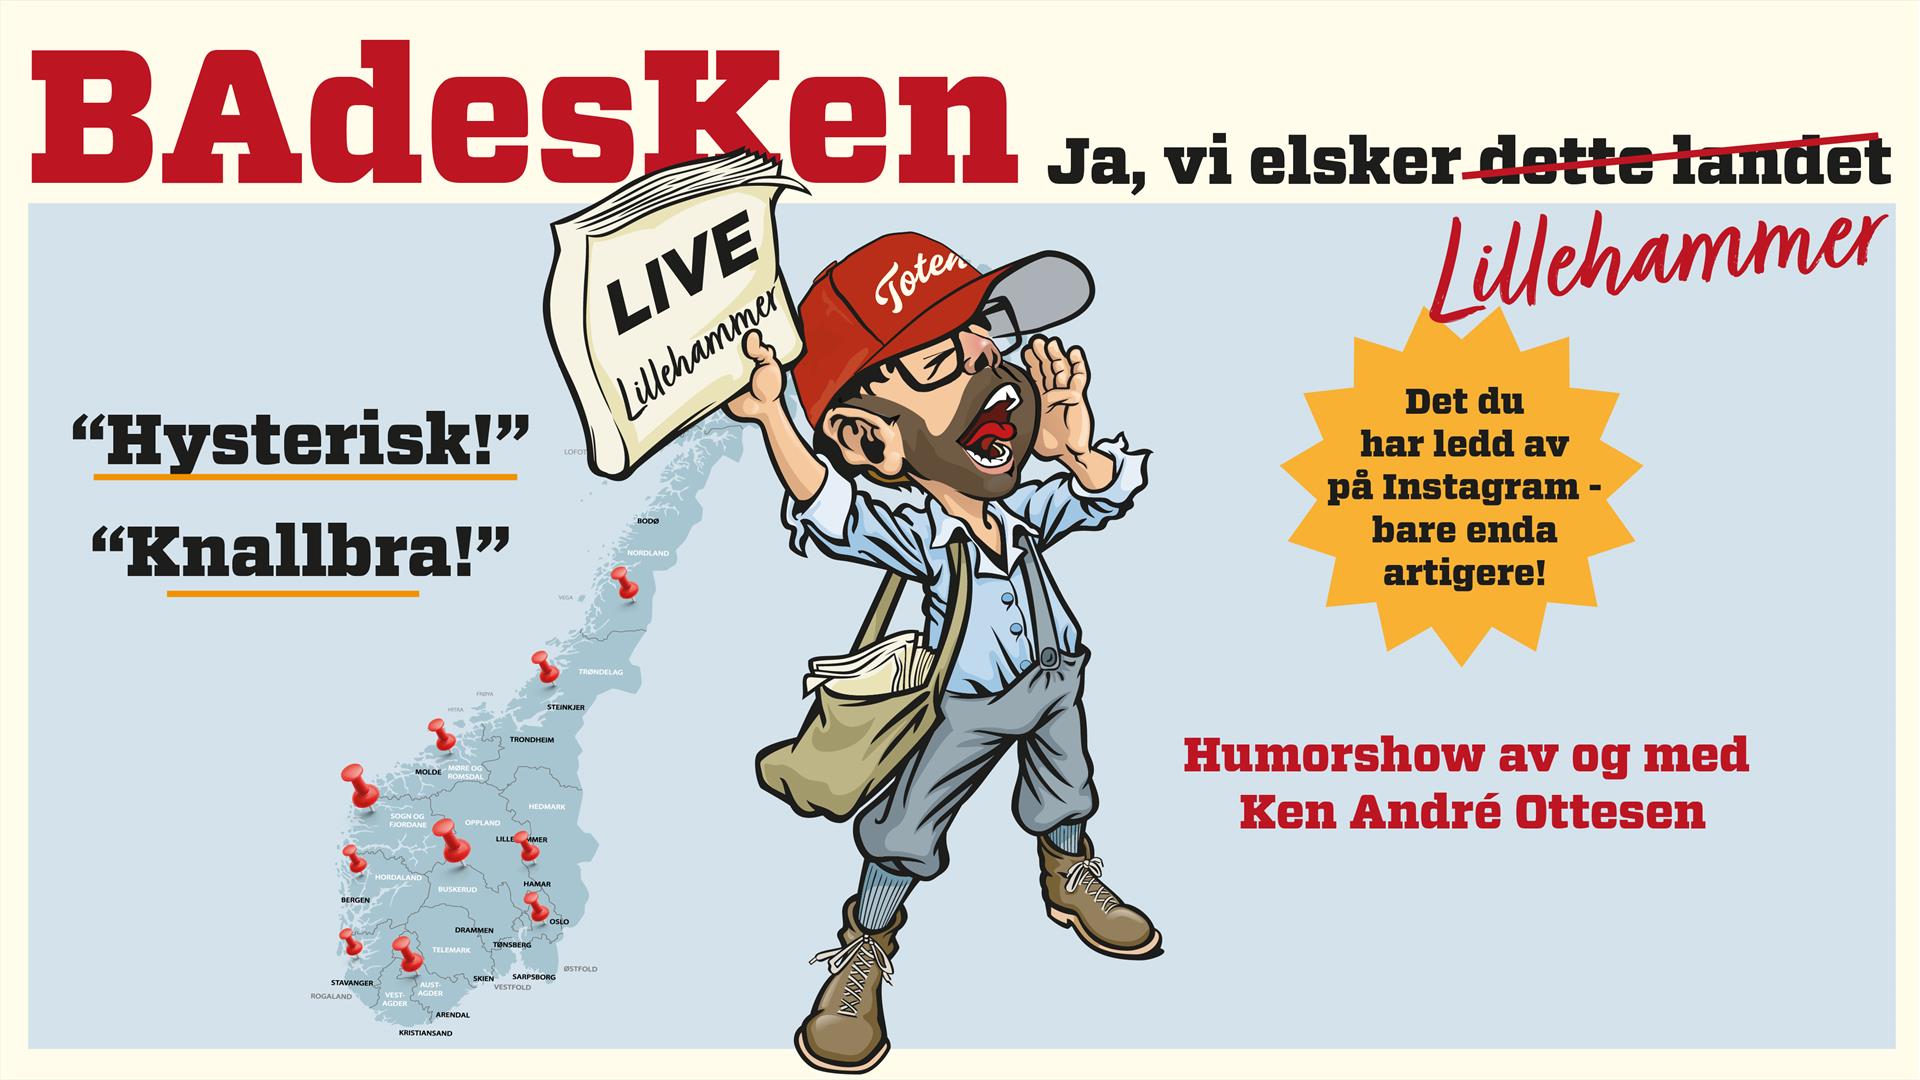 Velkommen til et humorshow med Ken André Ottesen!